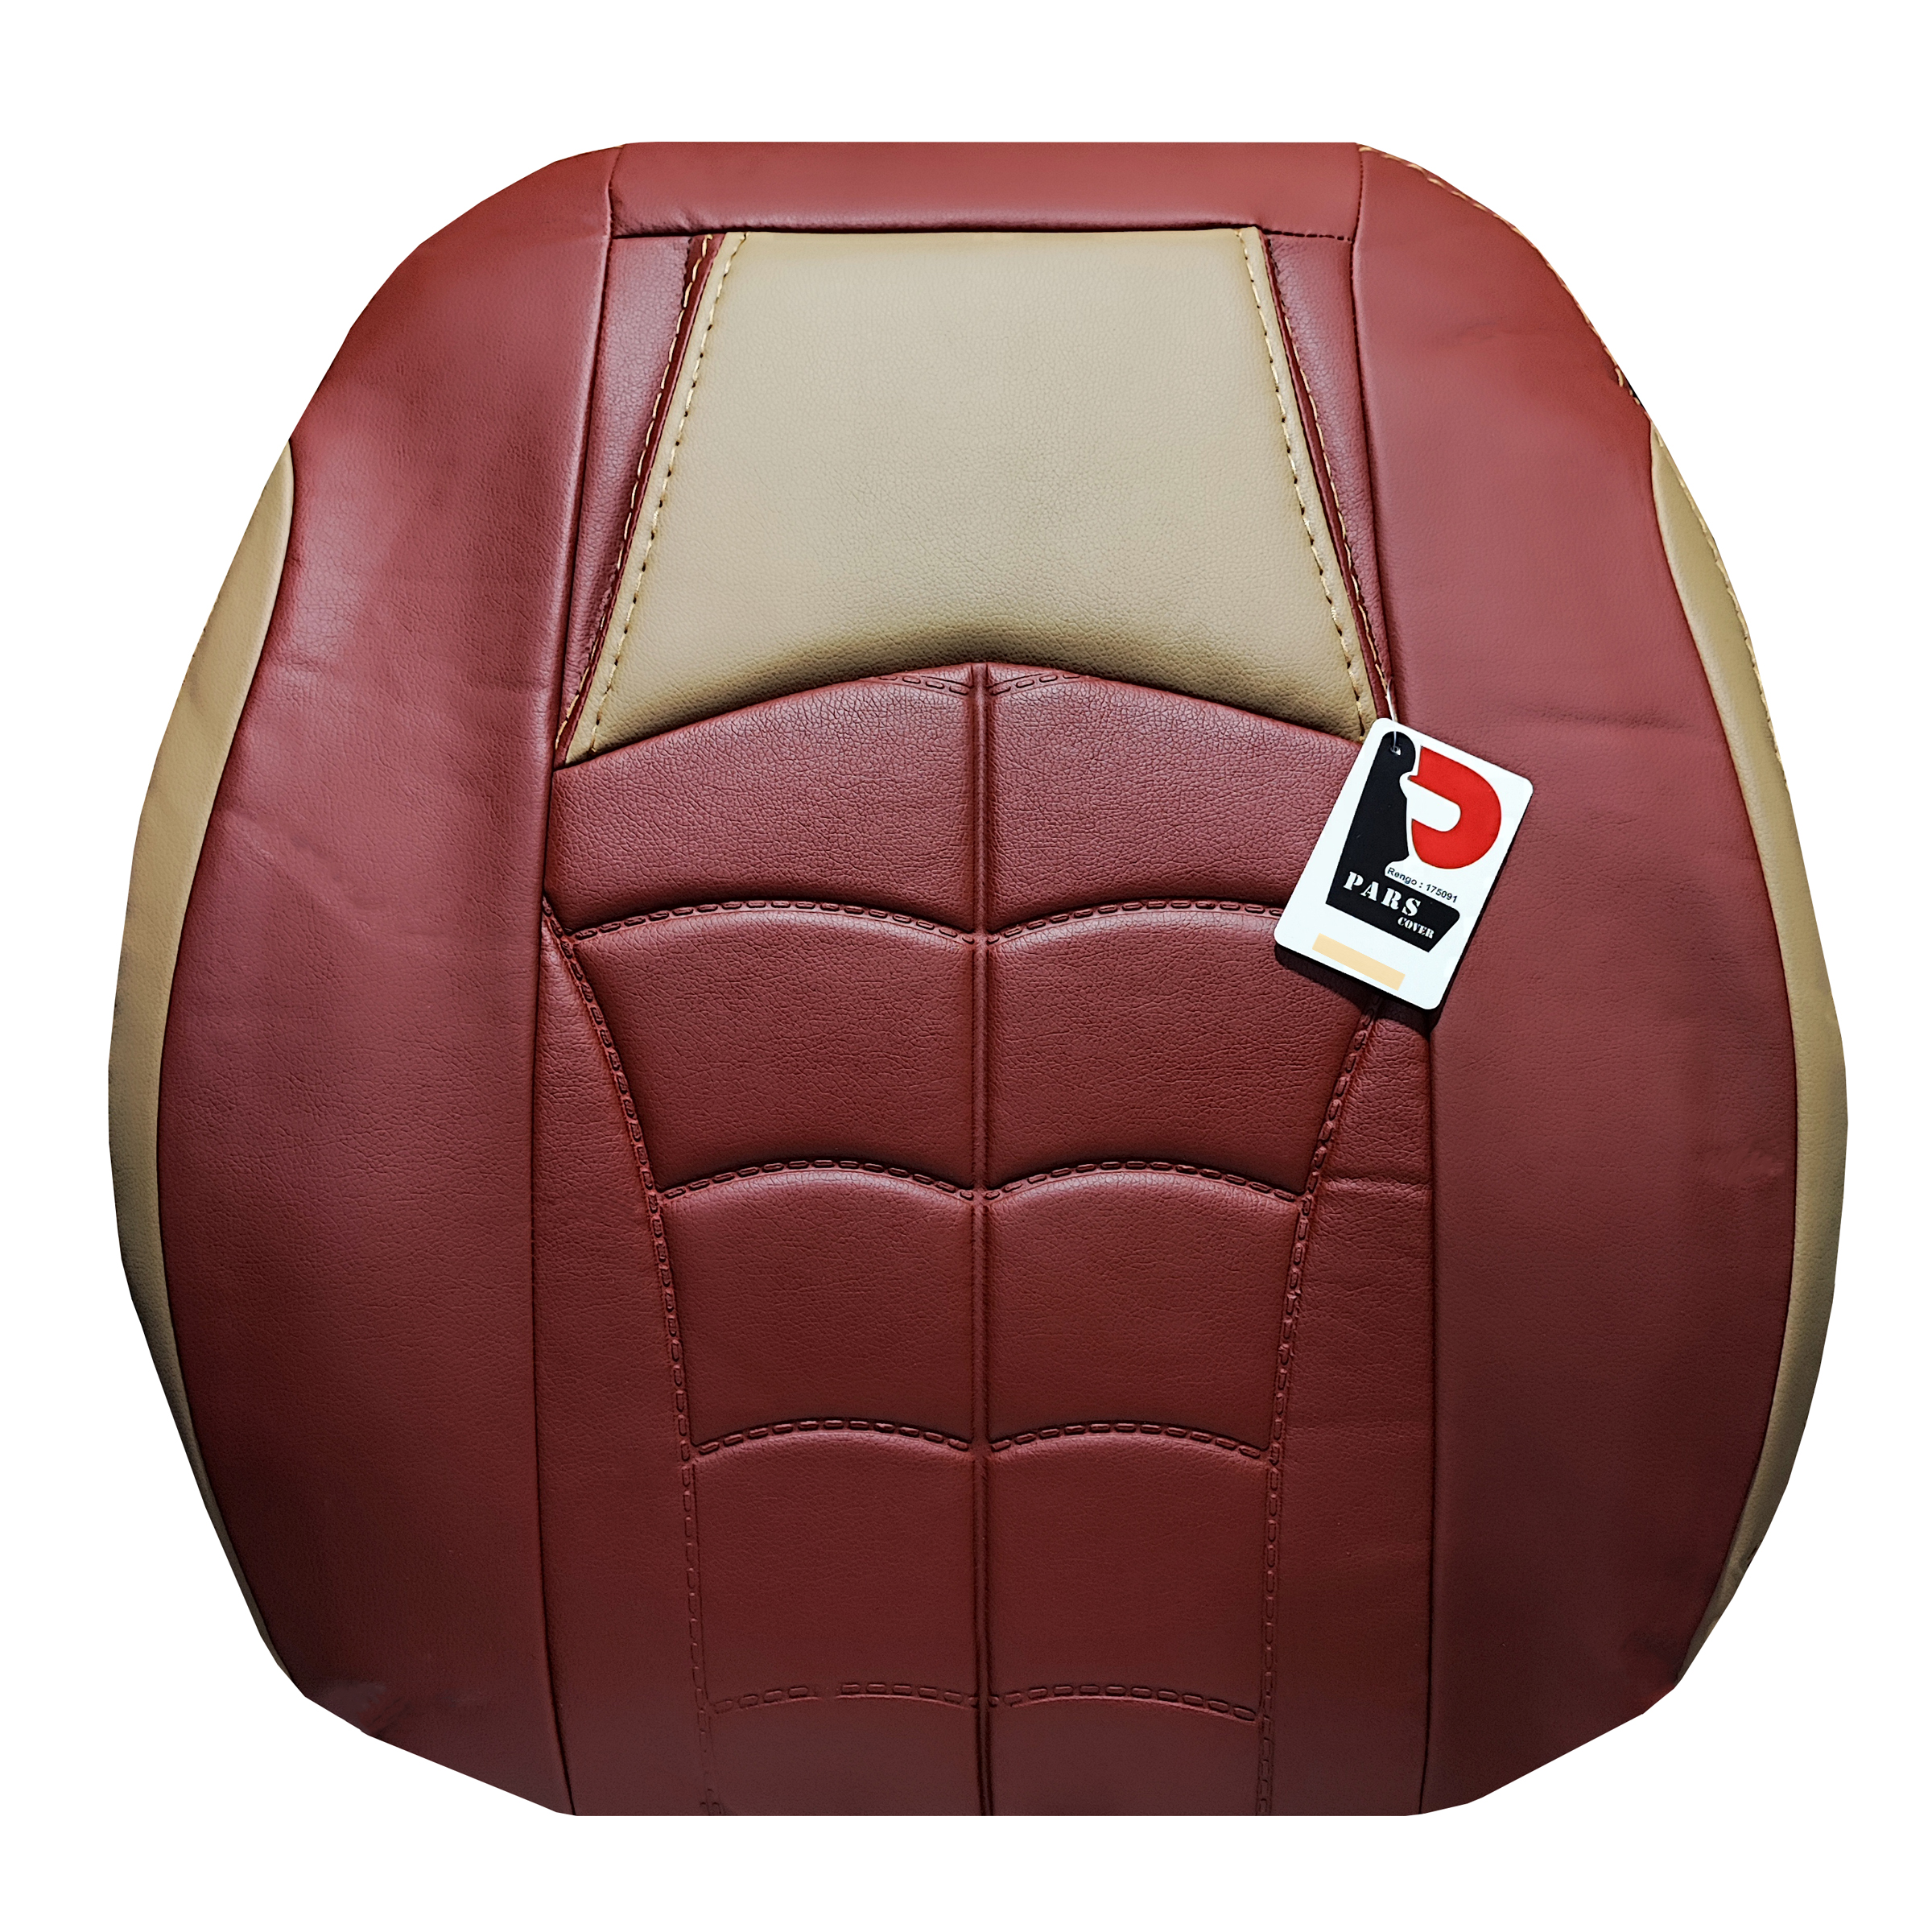 روکش صندلی خودرو پارس کاور طرح سیکس بک مناسب برای پژو پارس